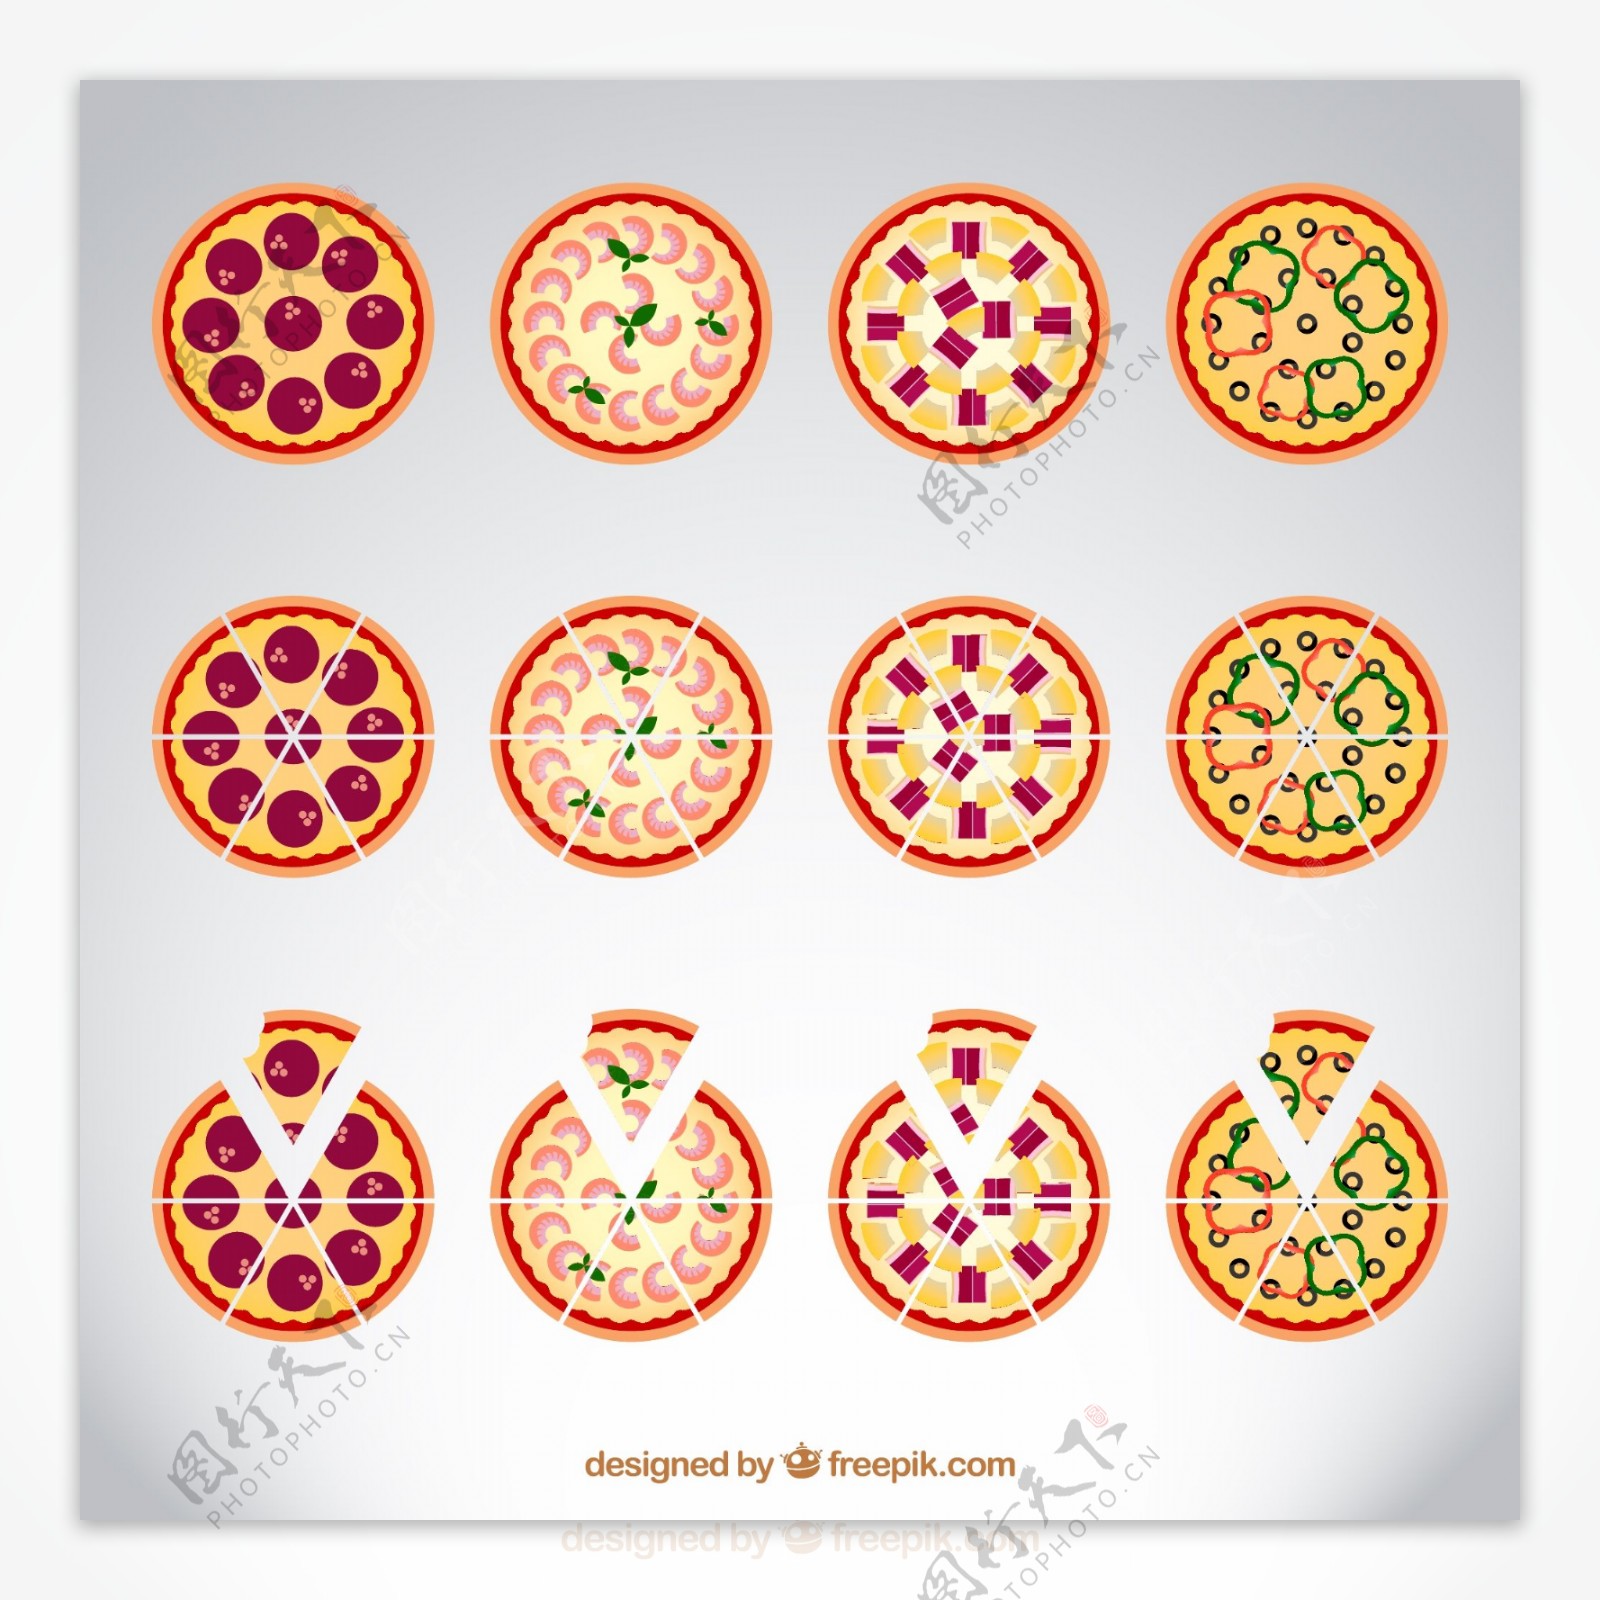 12款彩色披萨矢量素材